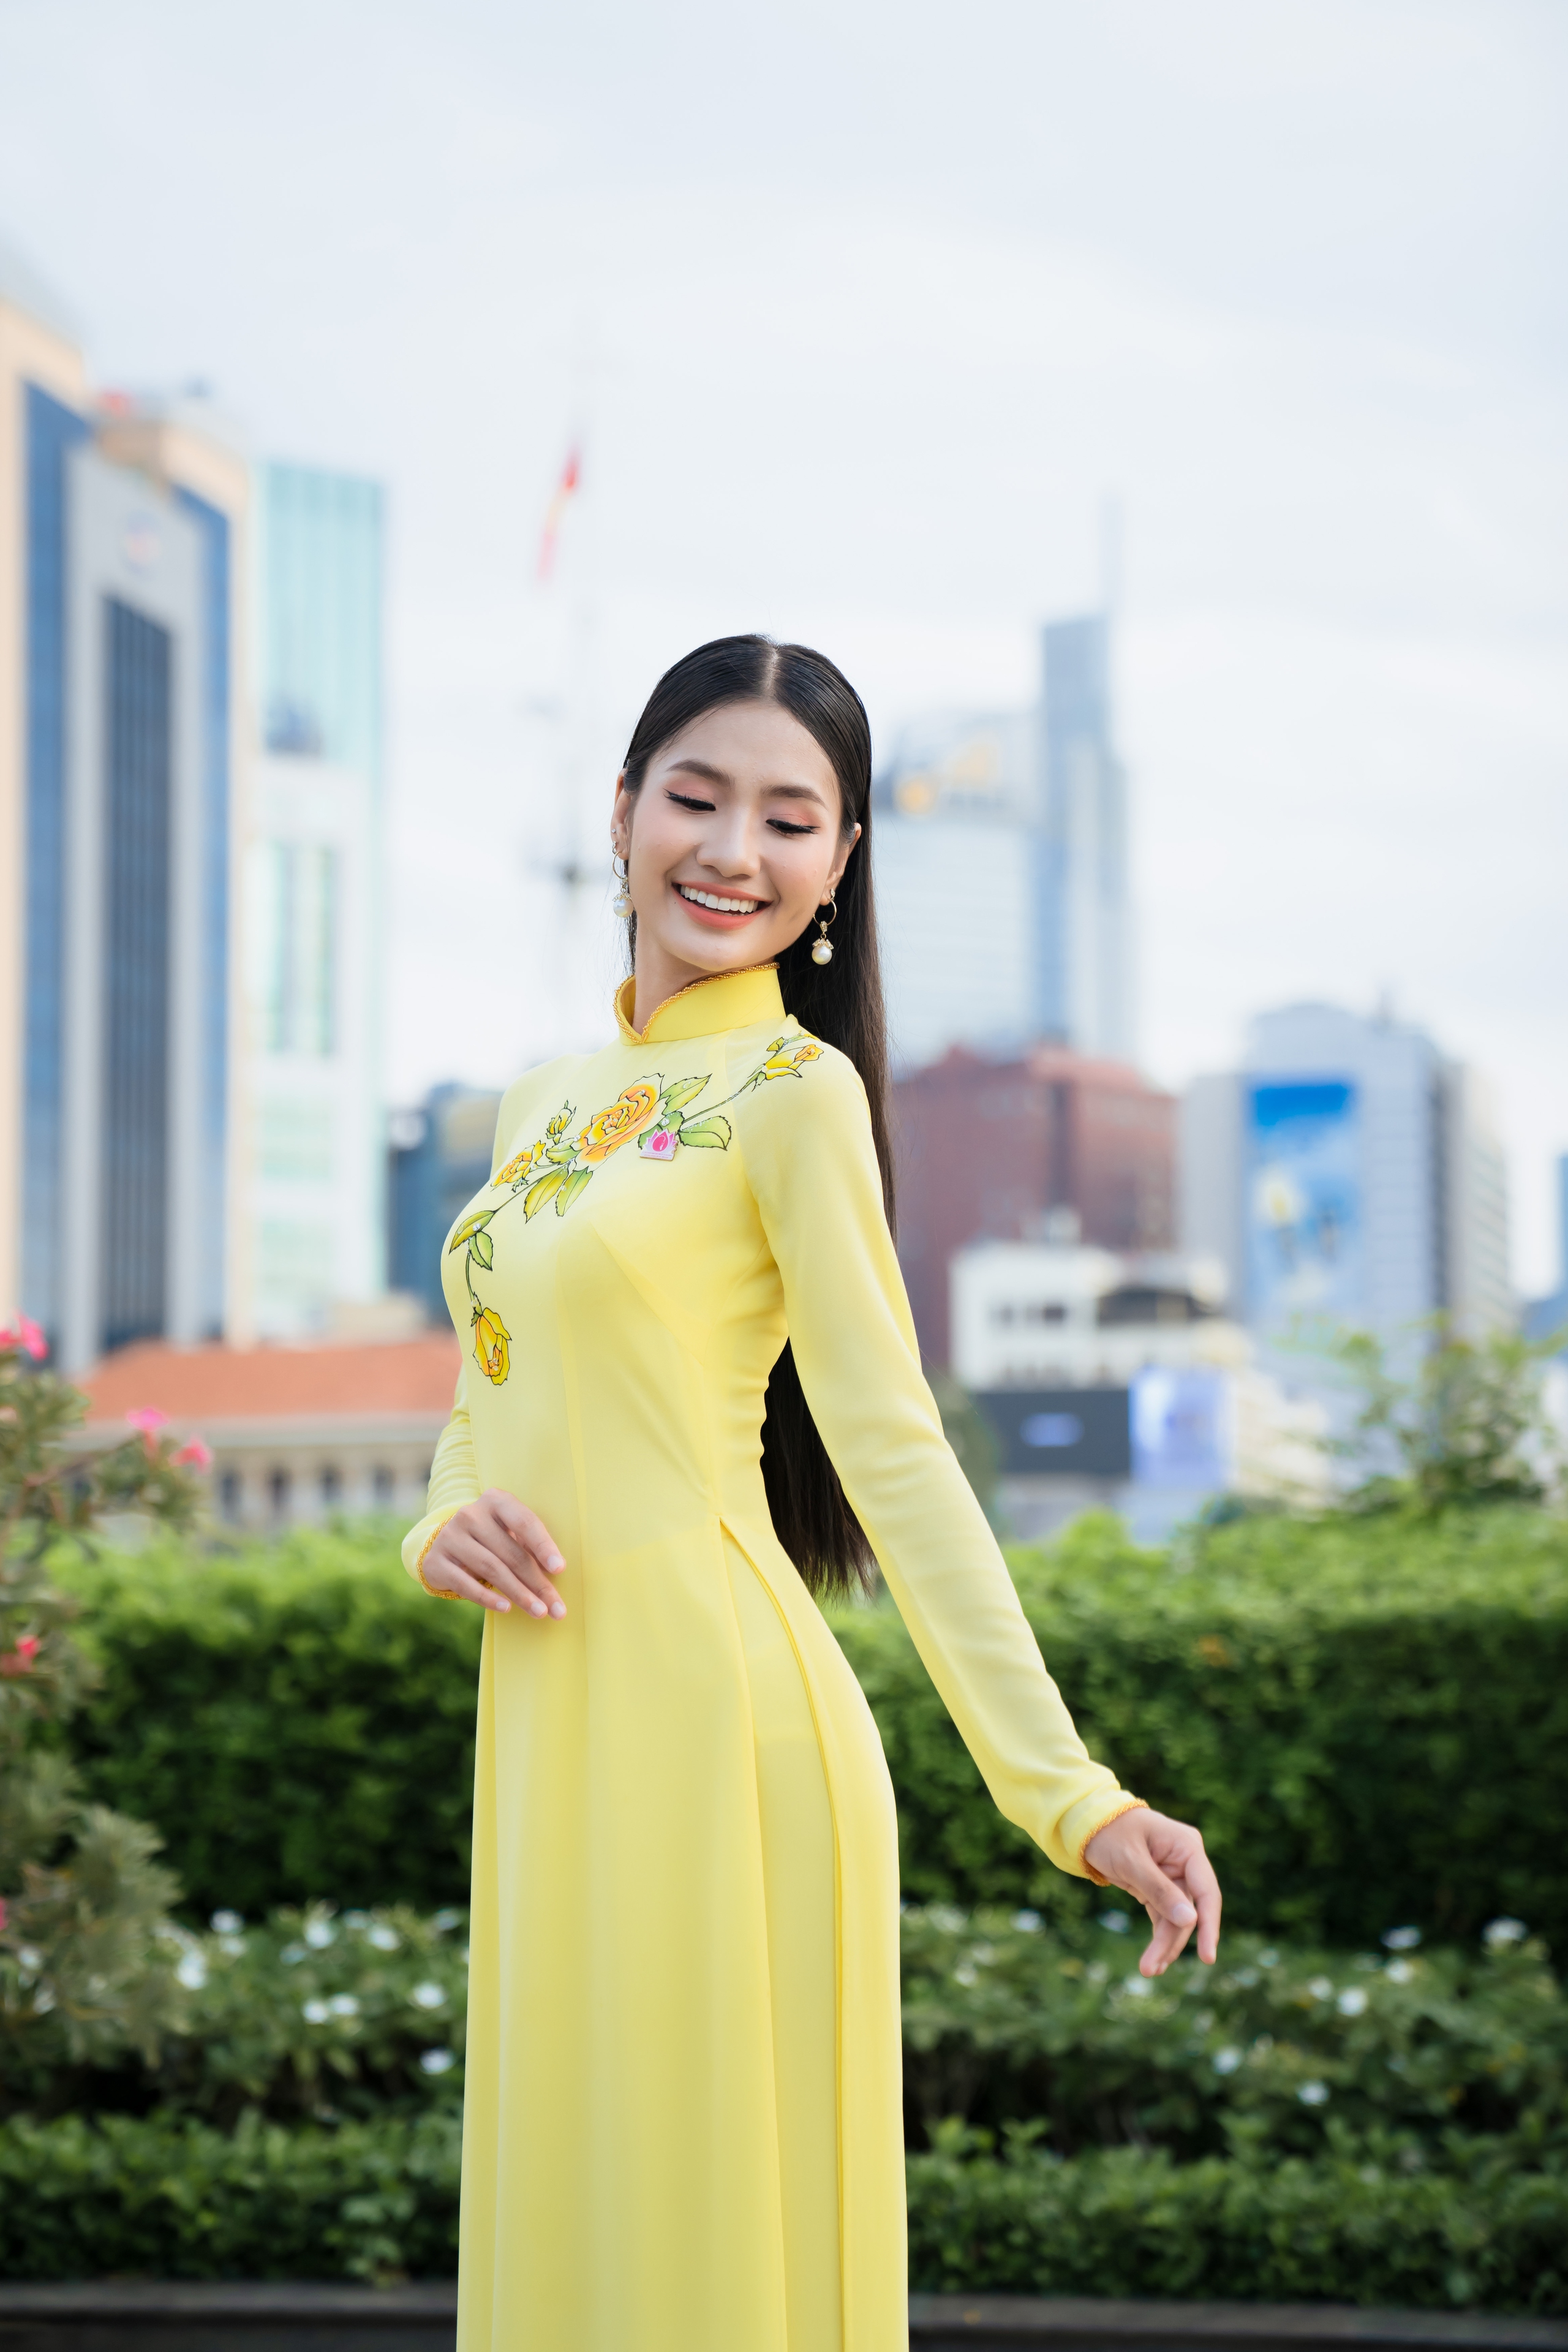 Hoa hậu Môi trường Thế giới Nguyễn Thanh Hà: “Người của công chúng nên tránh lan truyền kiến thức sai lệch”